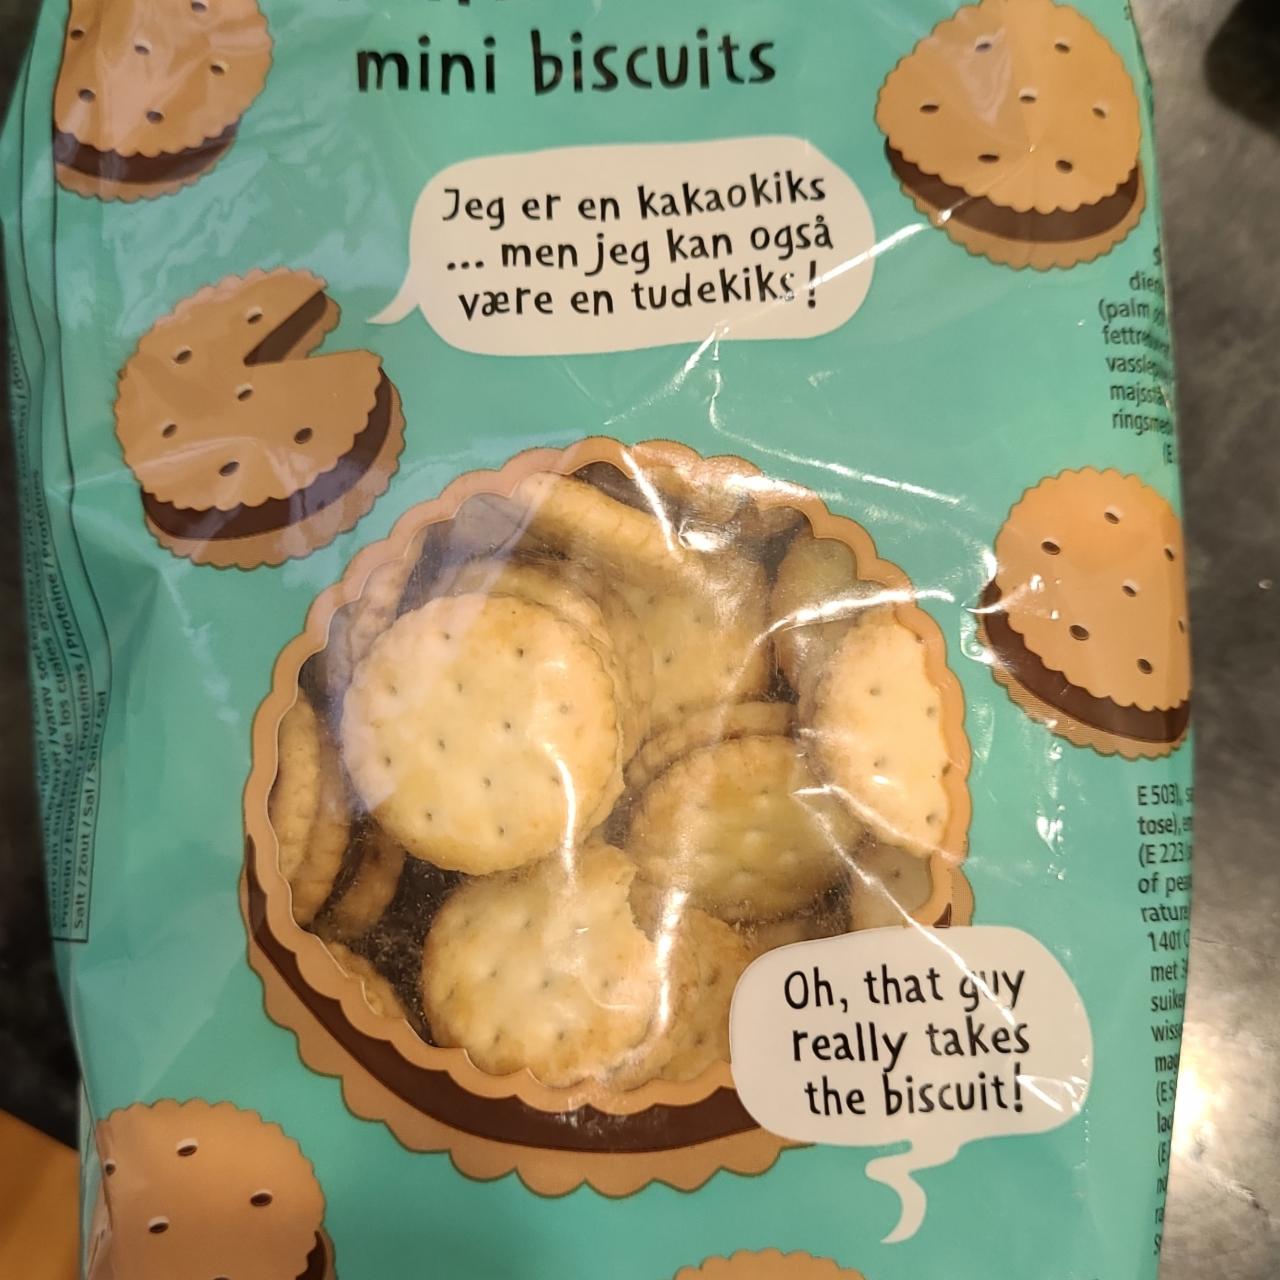 Fotografie - Mini-kiks mini biscuits Flying tiger